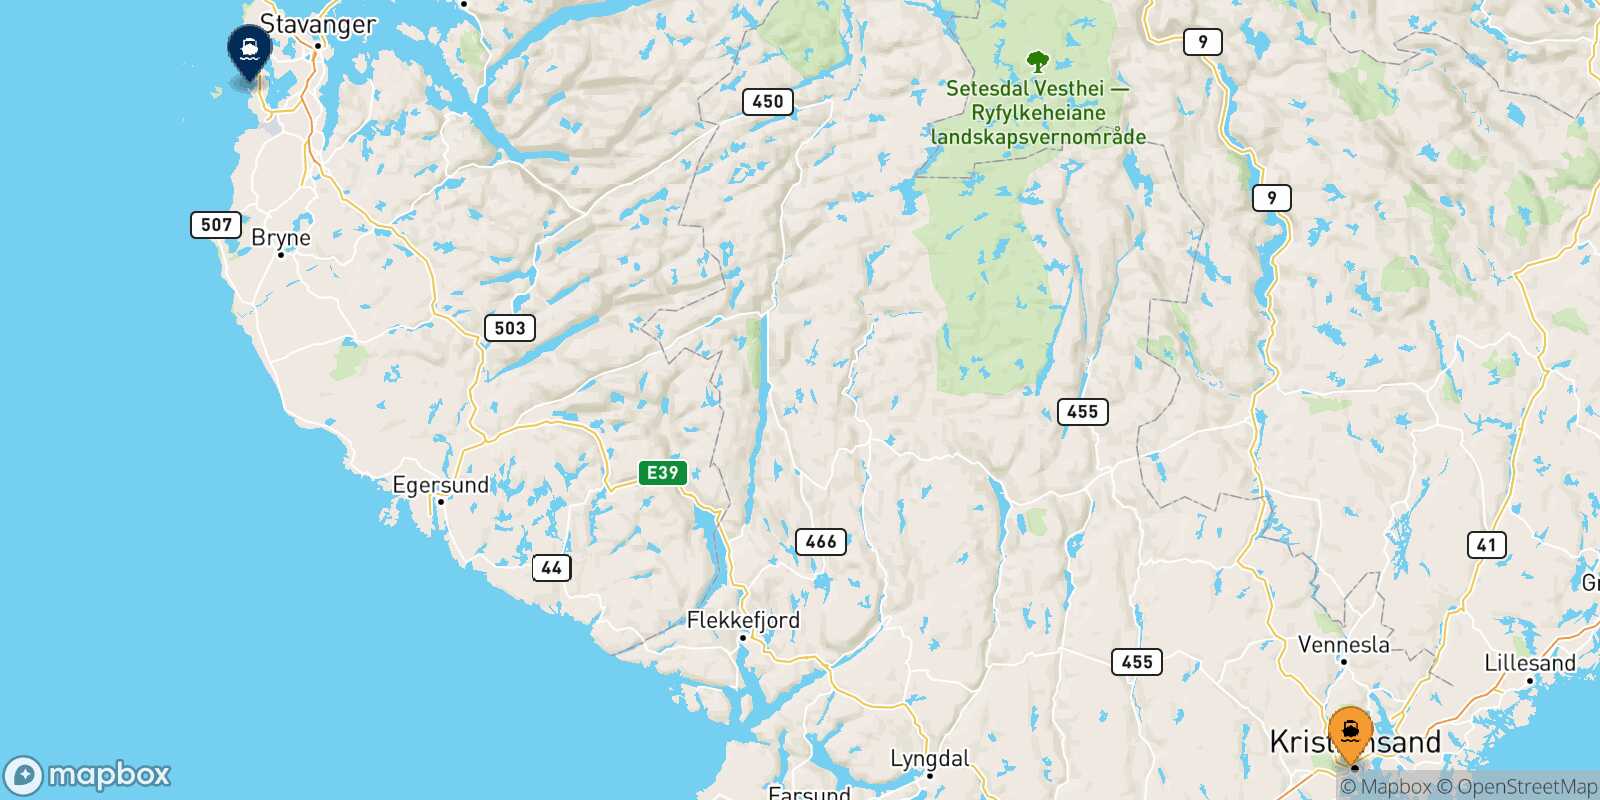 Kristiansand Stavanger route map